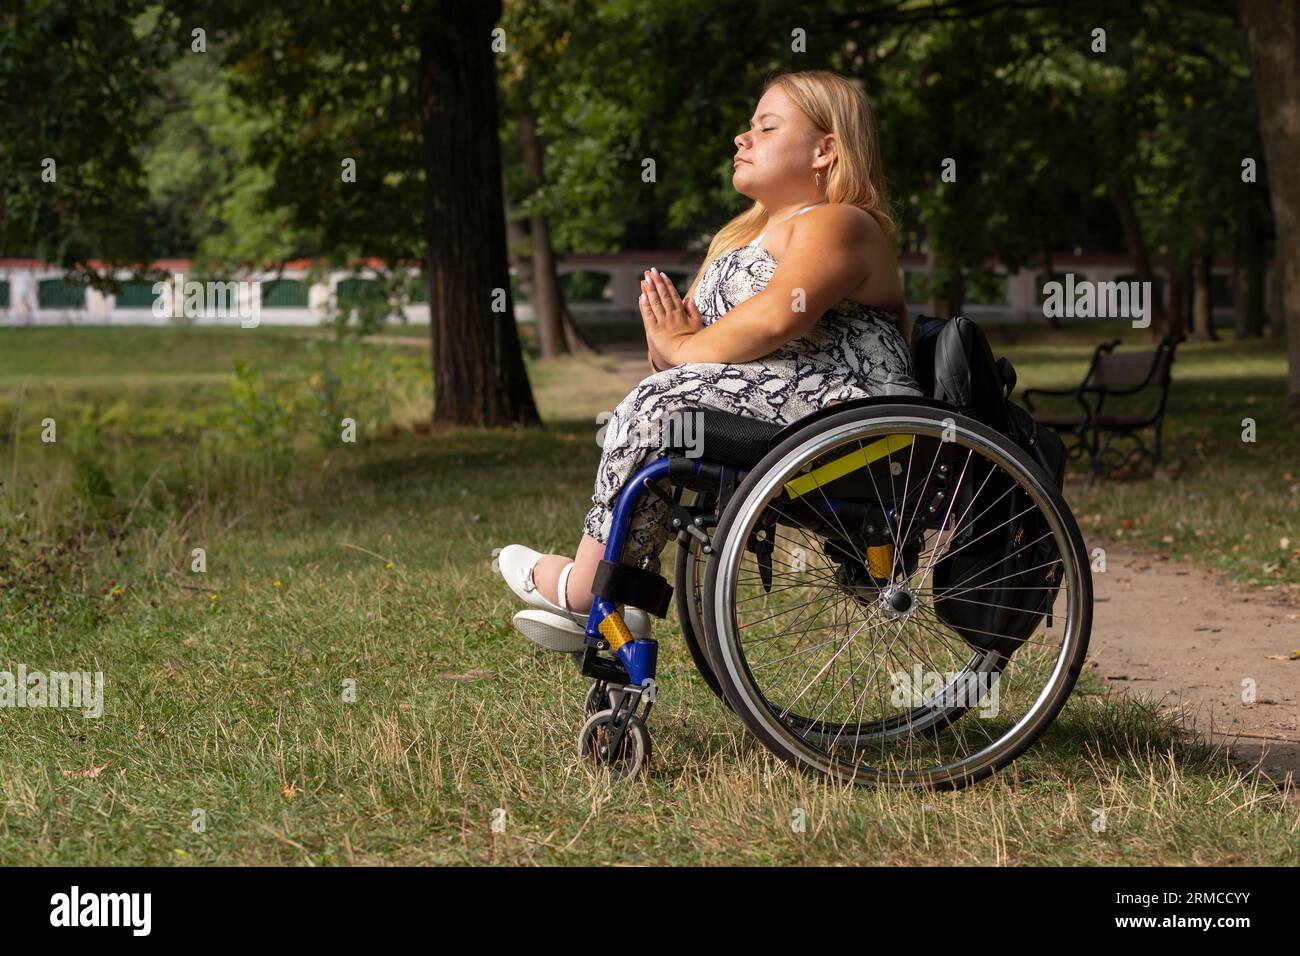 Jeune femme avec la taille courte sur fauteuil roulant médite, se relaxant dans Green Park le jour d'été. Pleine longueur Femme adulte handicapé aime le temps Banque D'Images